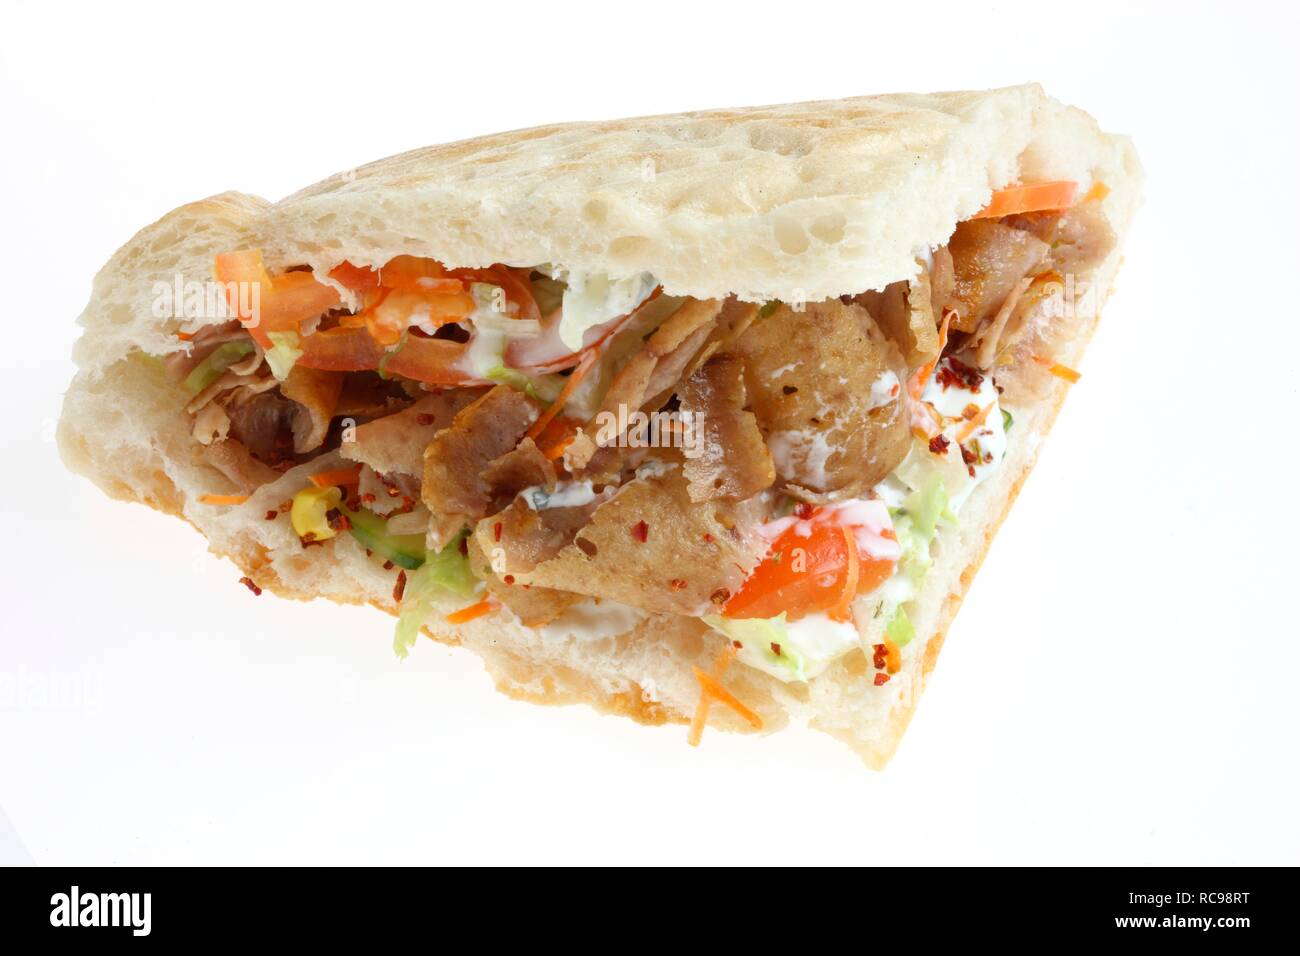 Comida rápida, doner kebab en pan pita con ensalada mixta con salsa de yogur y ajo. Foto de stock